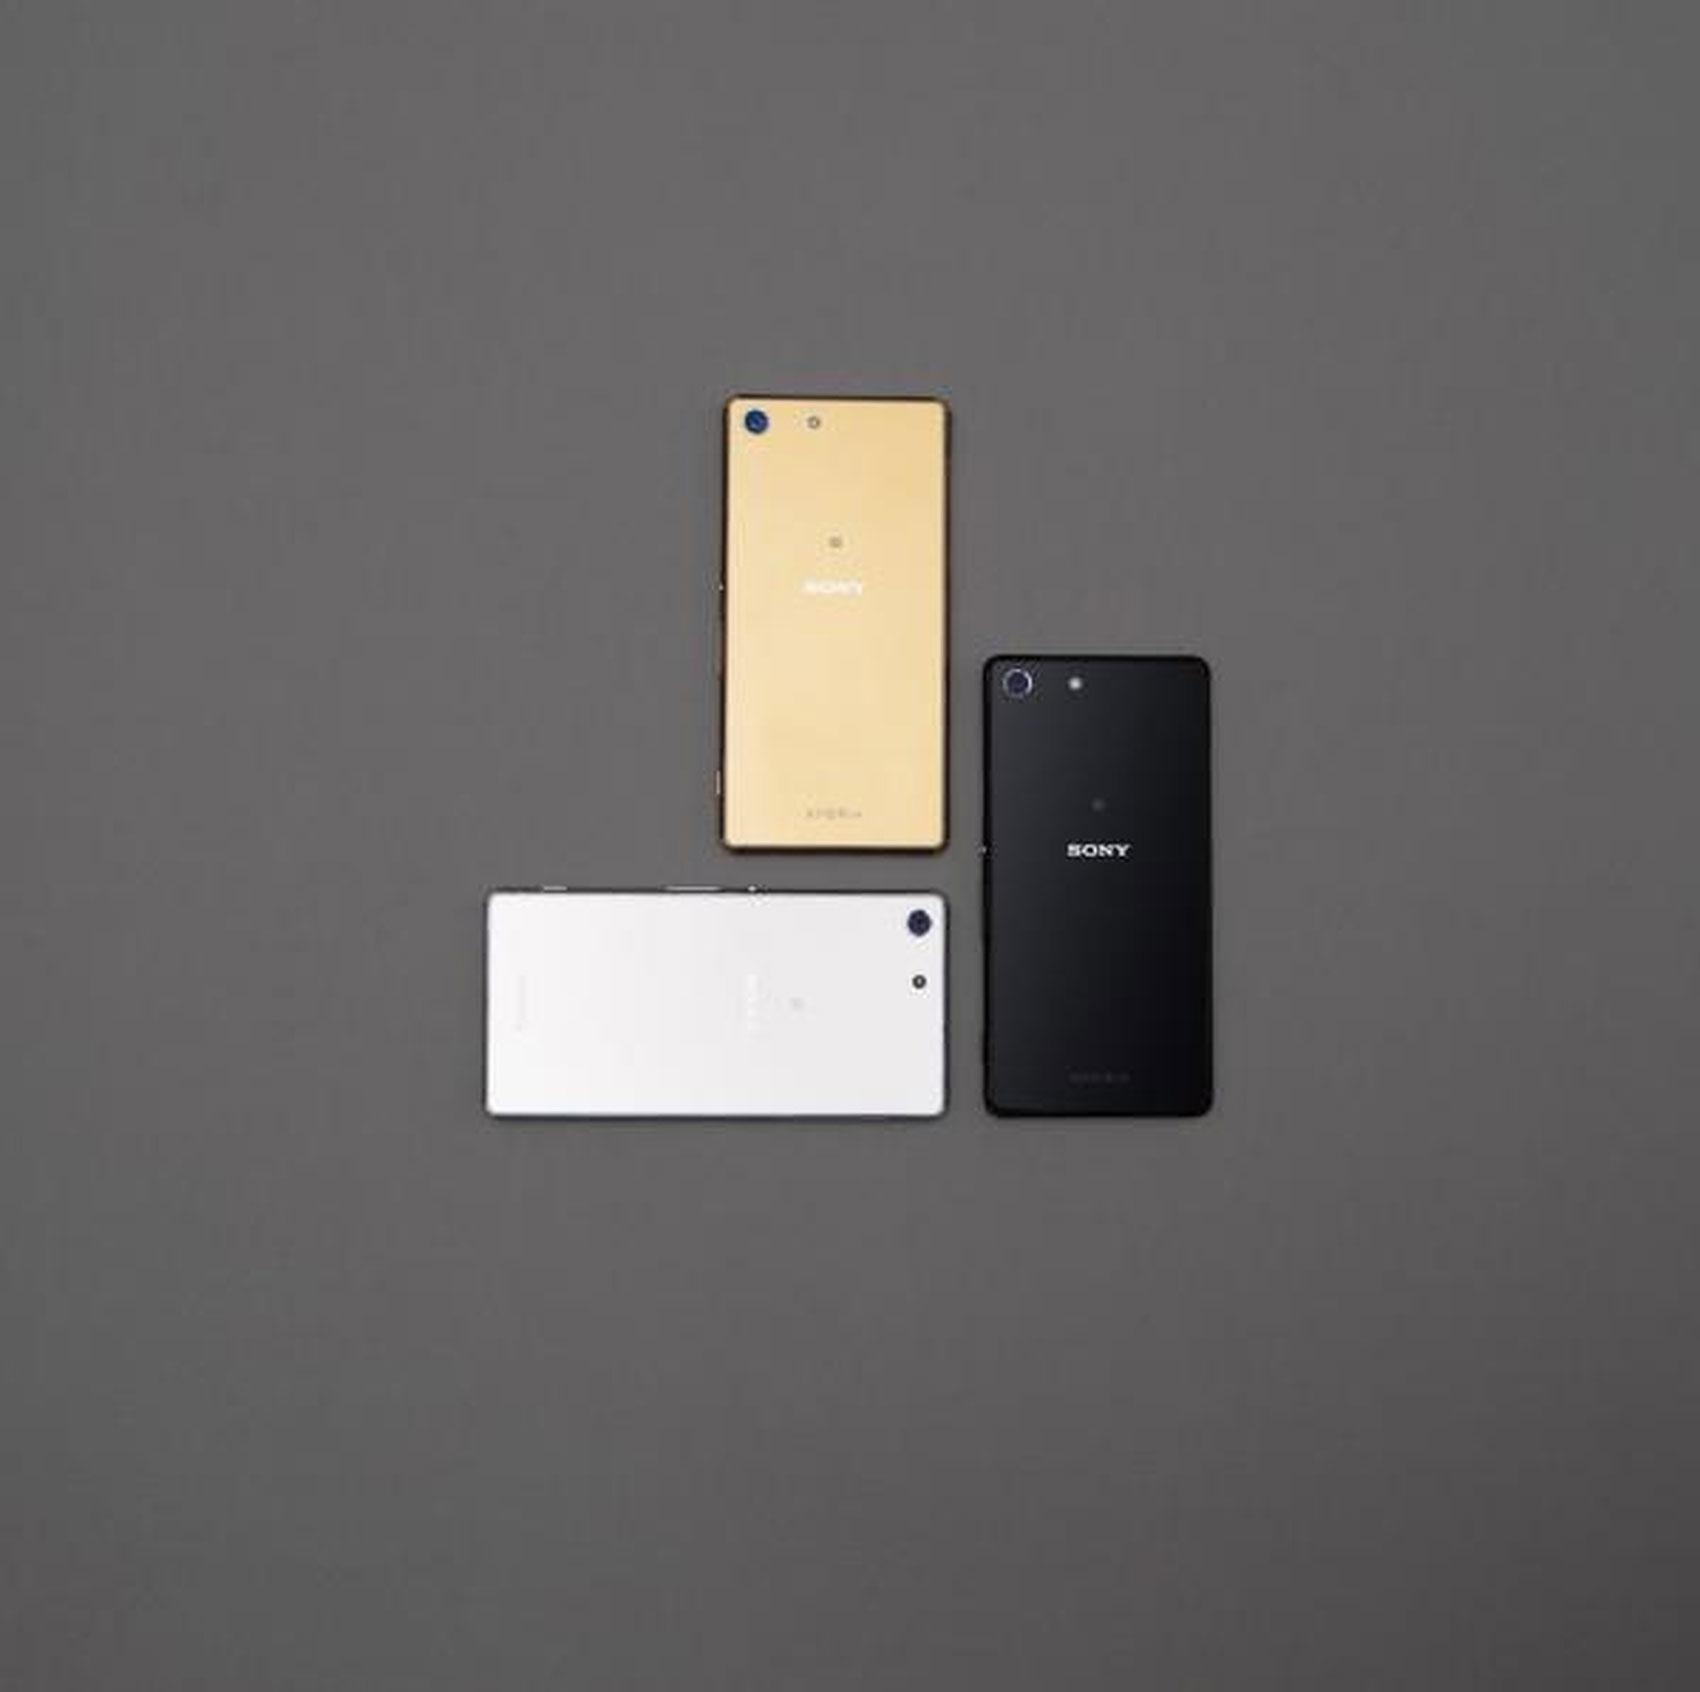 Sony Xperia M5 en color oro, blanco y negro